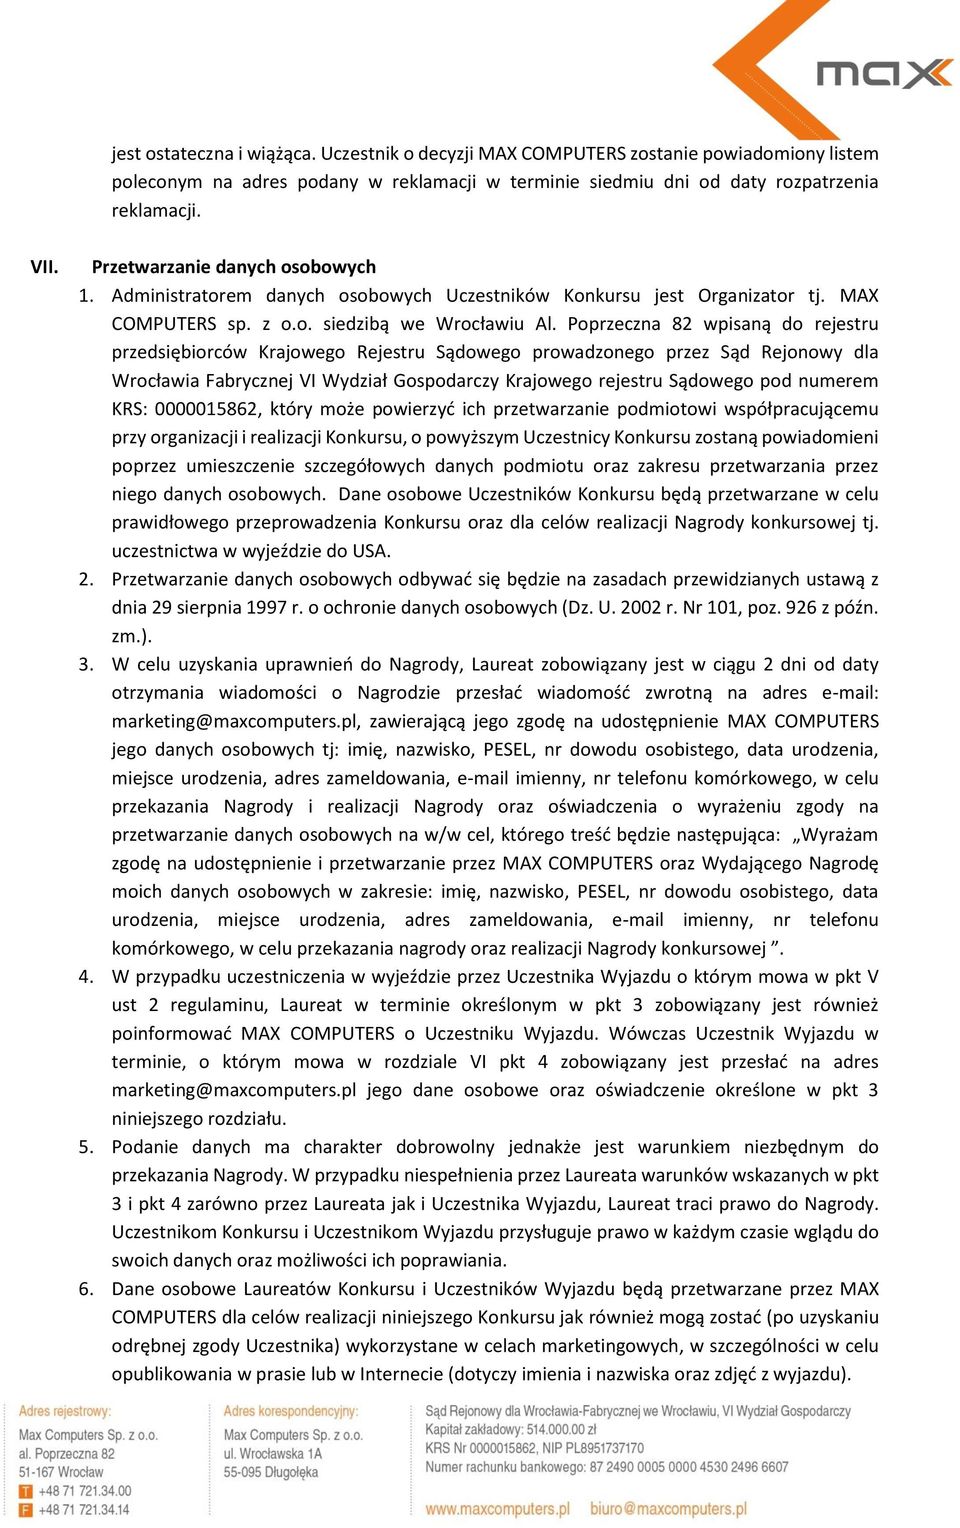 Poprzeczna 82 wpisaną do rejestru przedsiębiorców Krajowego Rejestru Sądowego prowadzonego przez Sąd Rejonowy dla Wrocławia Fabrycznej VI Wydział Gospodarczy Krajowego rejestru Sądowego pod numerem